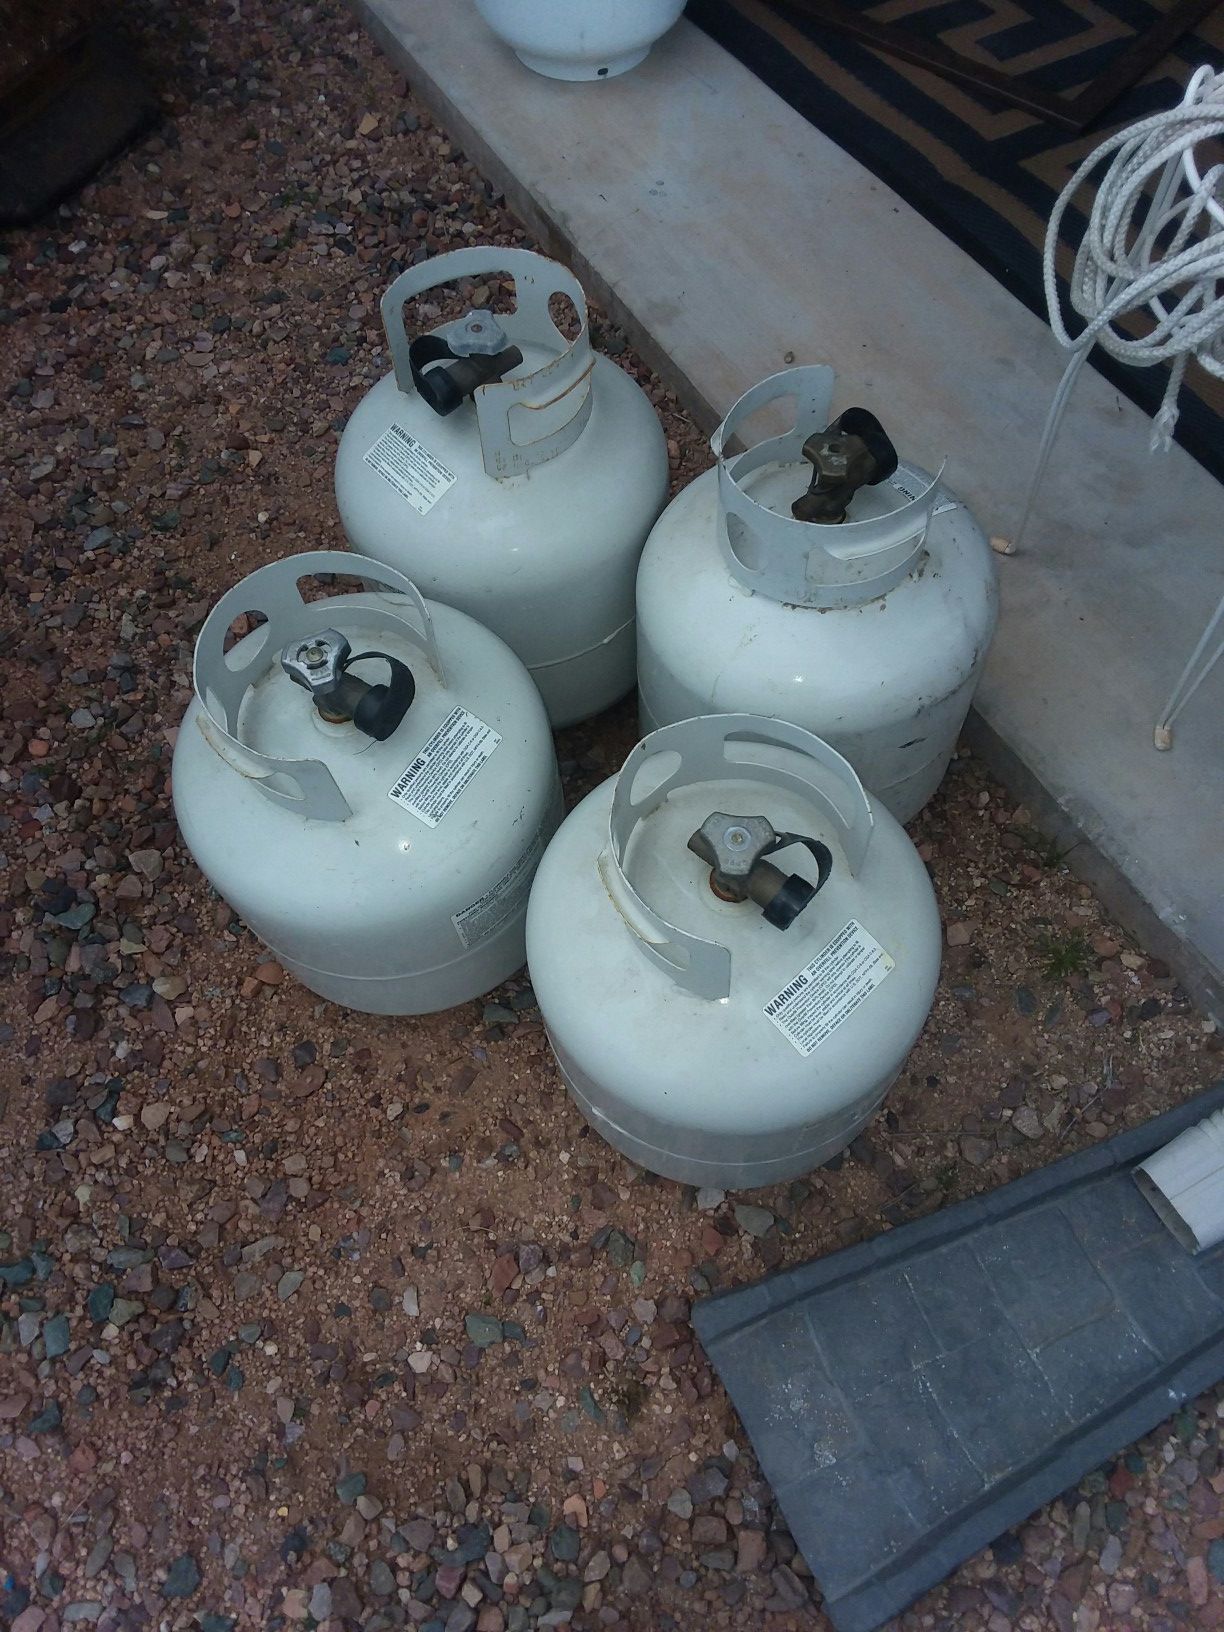 5 gal full propane bottles 38.00 each